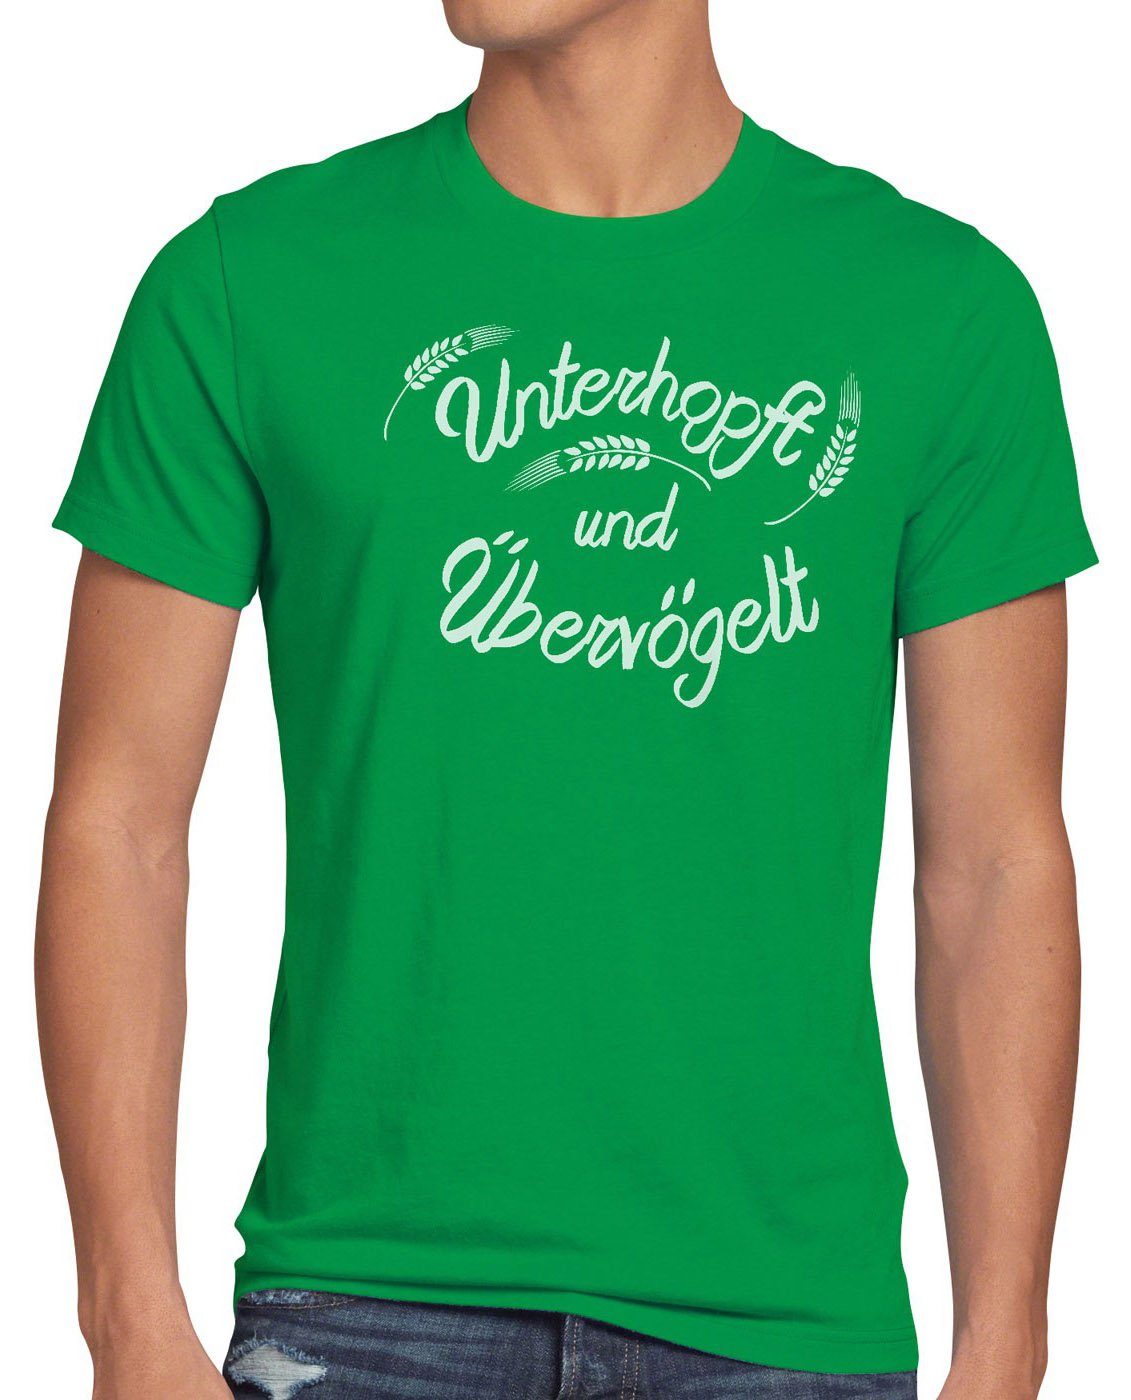 Unterhopft grün Shirt style3 T-Shirt Bier Print-Shirt Kult Herren Spruch Malz Funshirt Übervögelt Fun